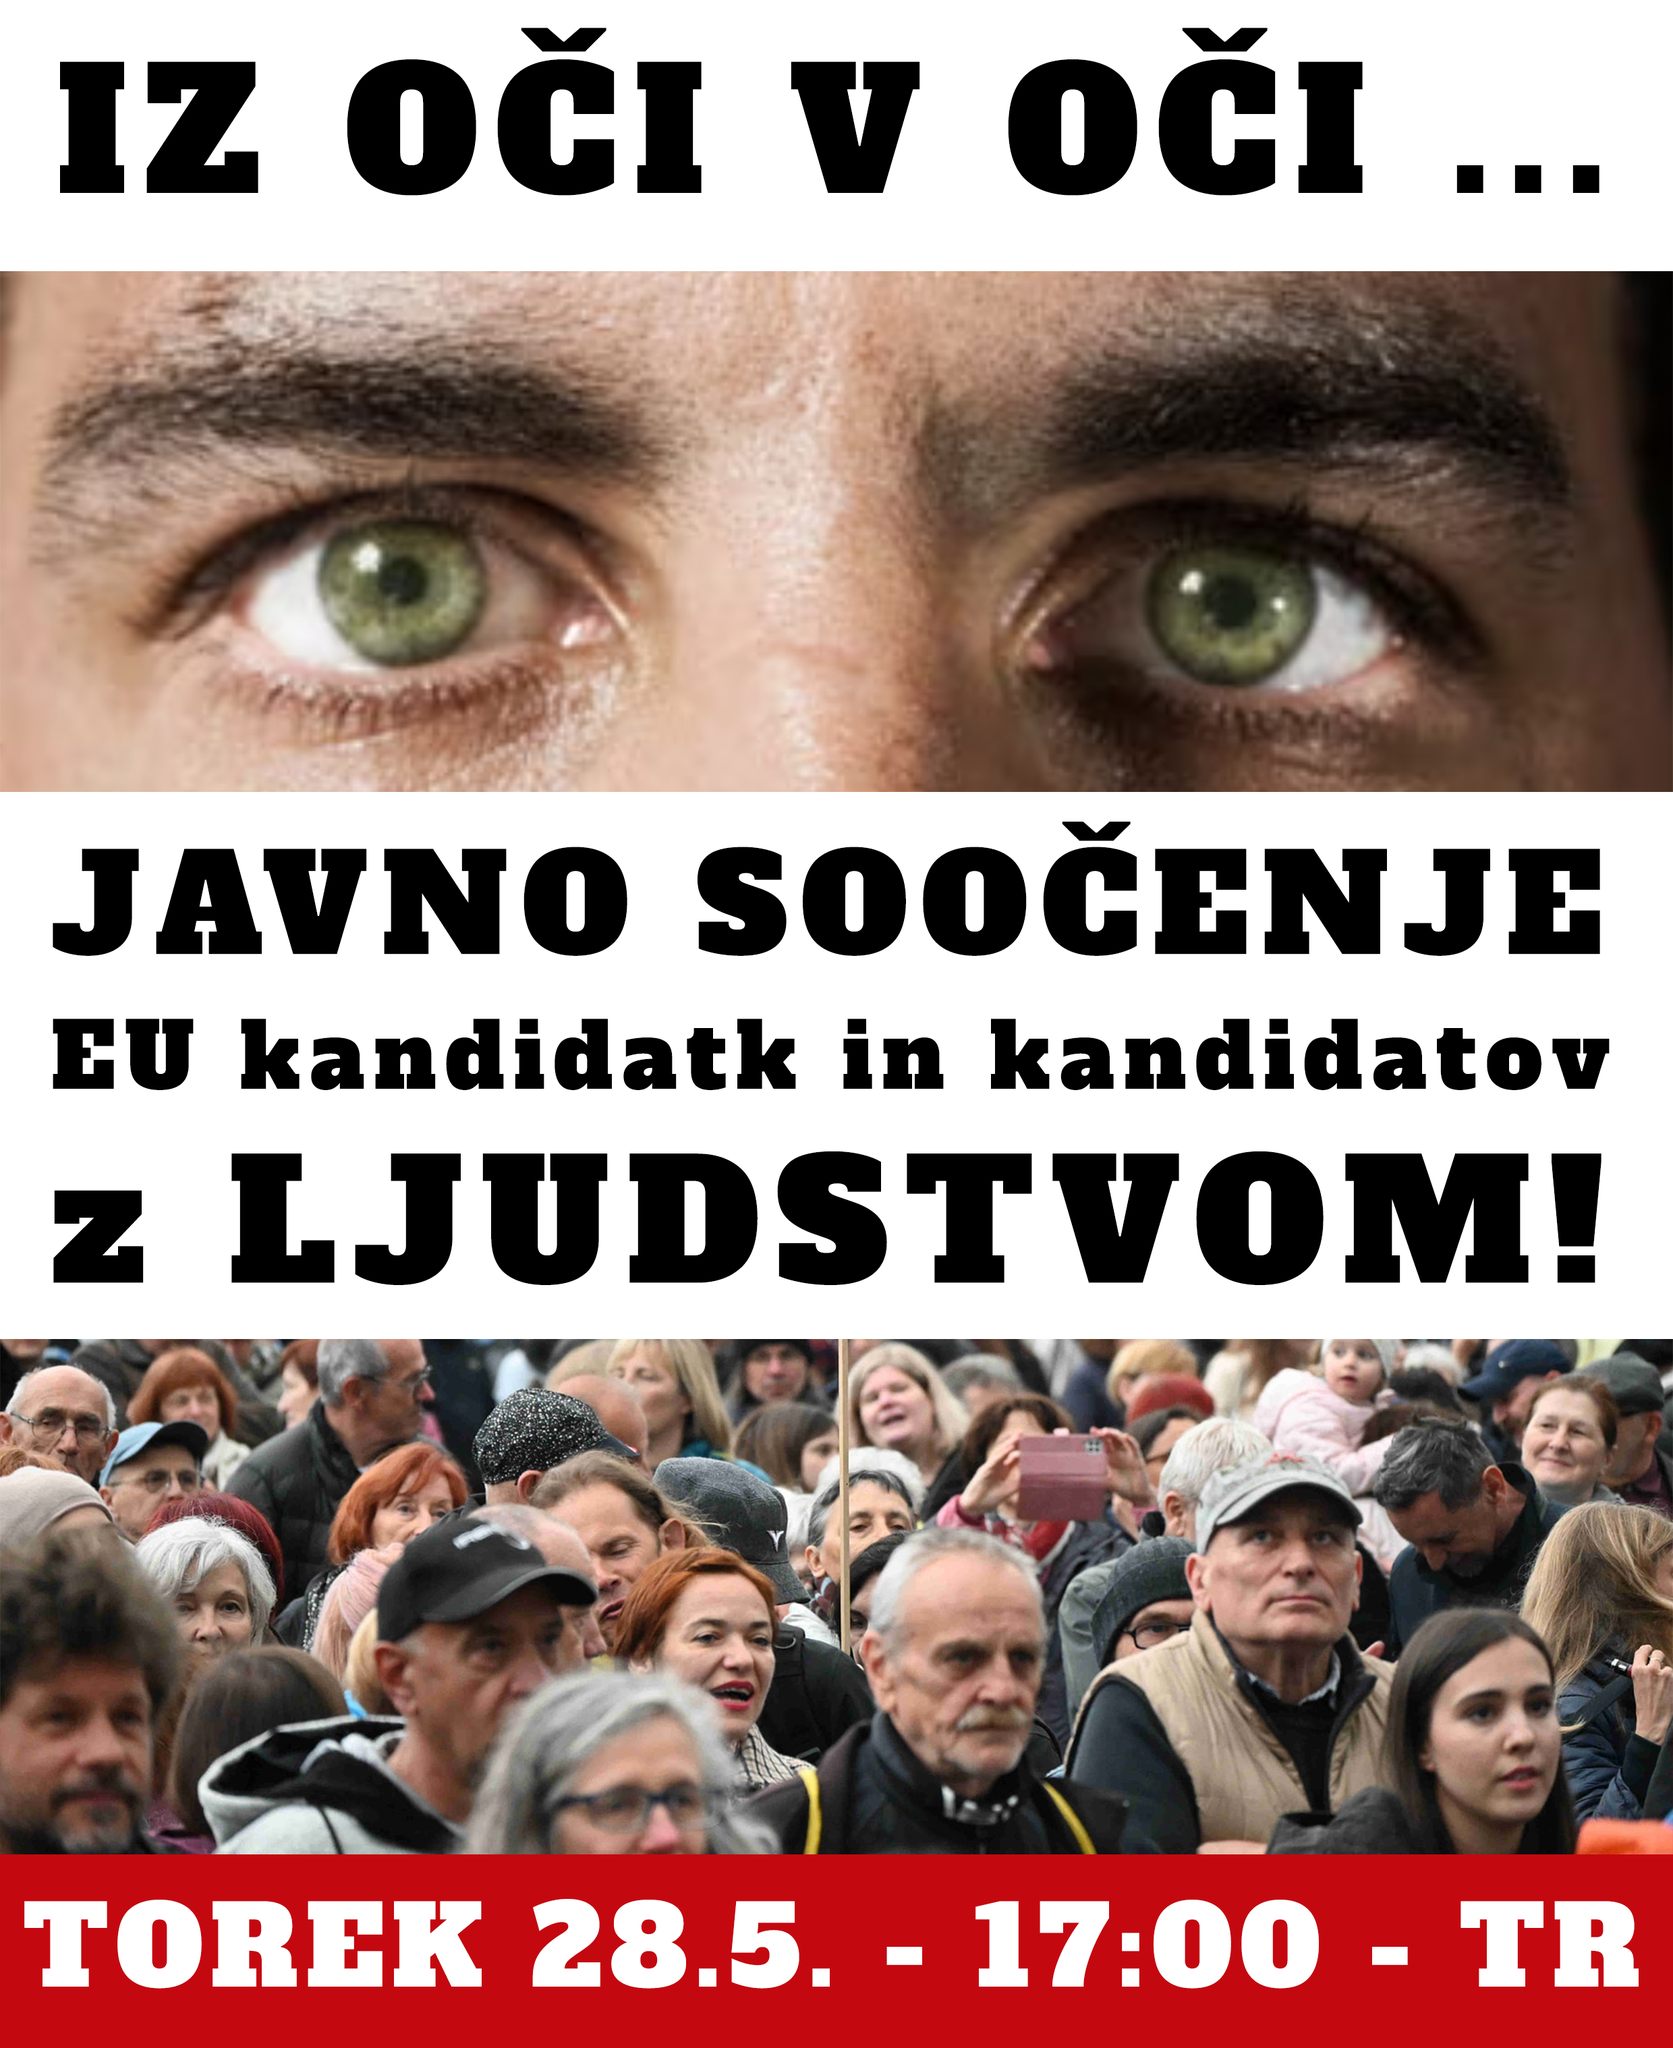 (V ŽIVO) Jutri  na Trgu republike ponovno dviganje loparčkov – Glas ljudstva Jaše Jenulla organizira javno soočenje kandidatov in kandidatk za evropski parlament.